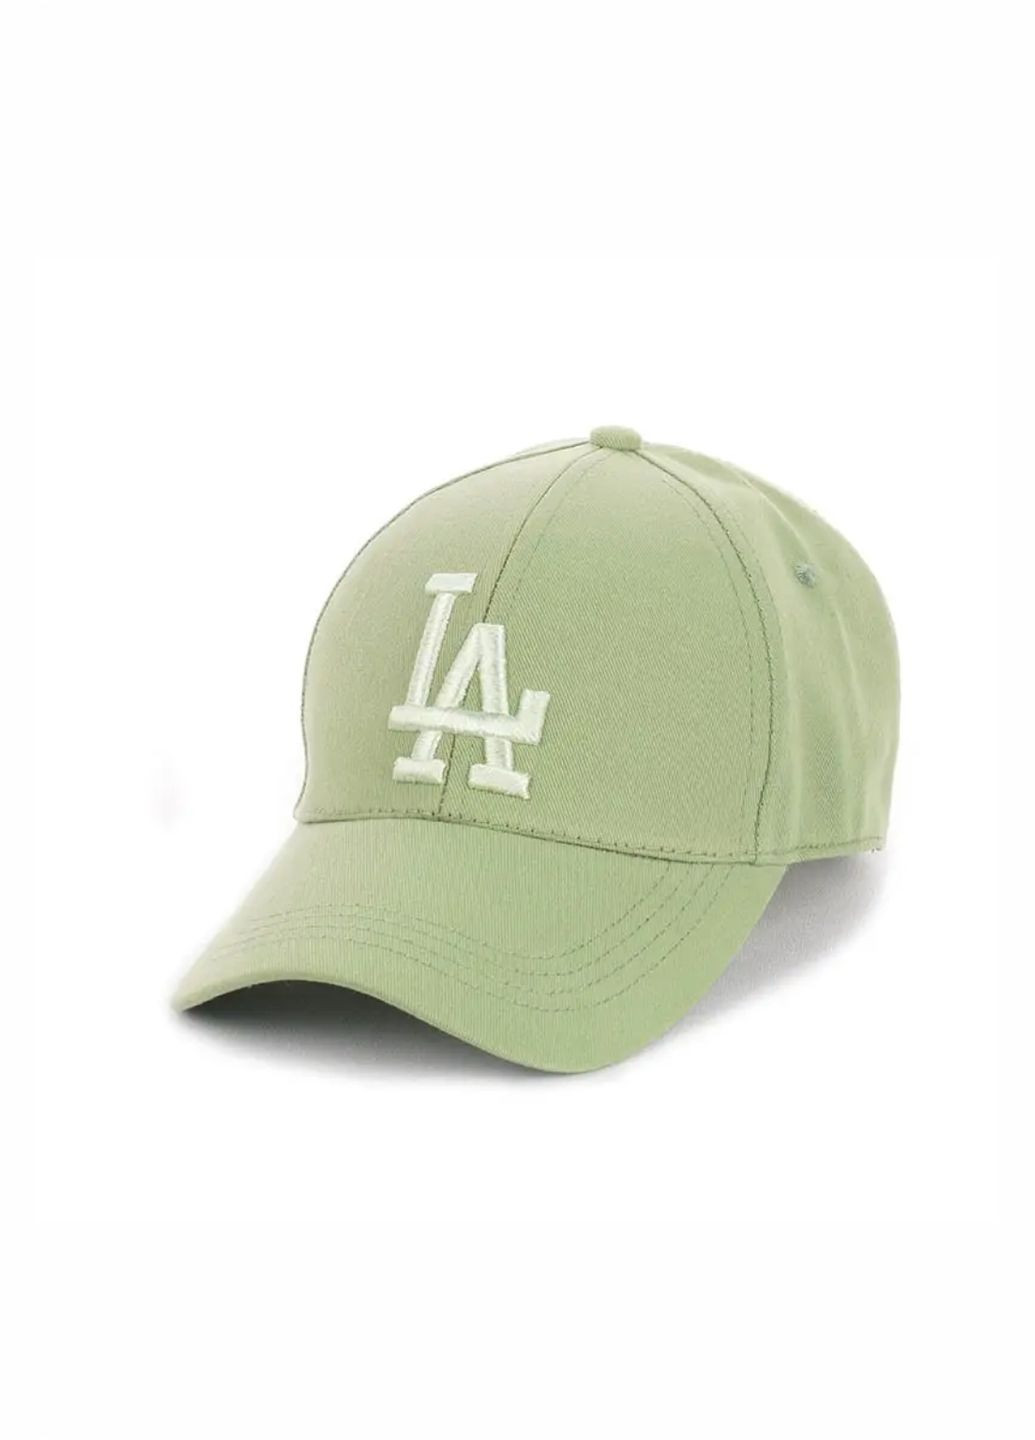 Кепка Los Angeles / Лос Анджелес S/M No Brand кепка унісекс (279381246)